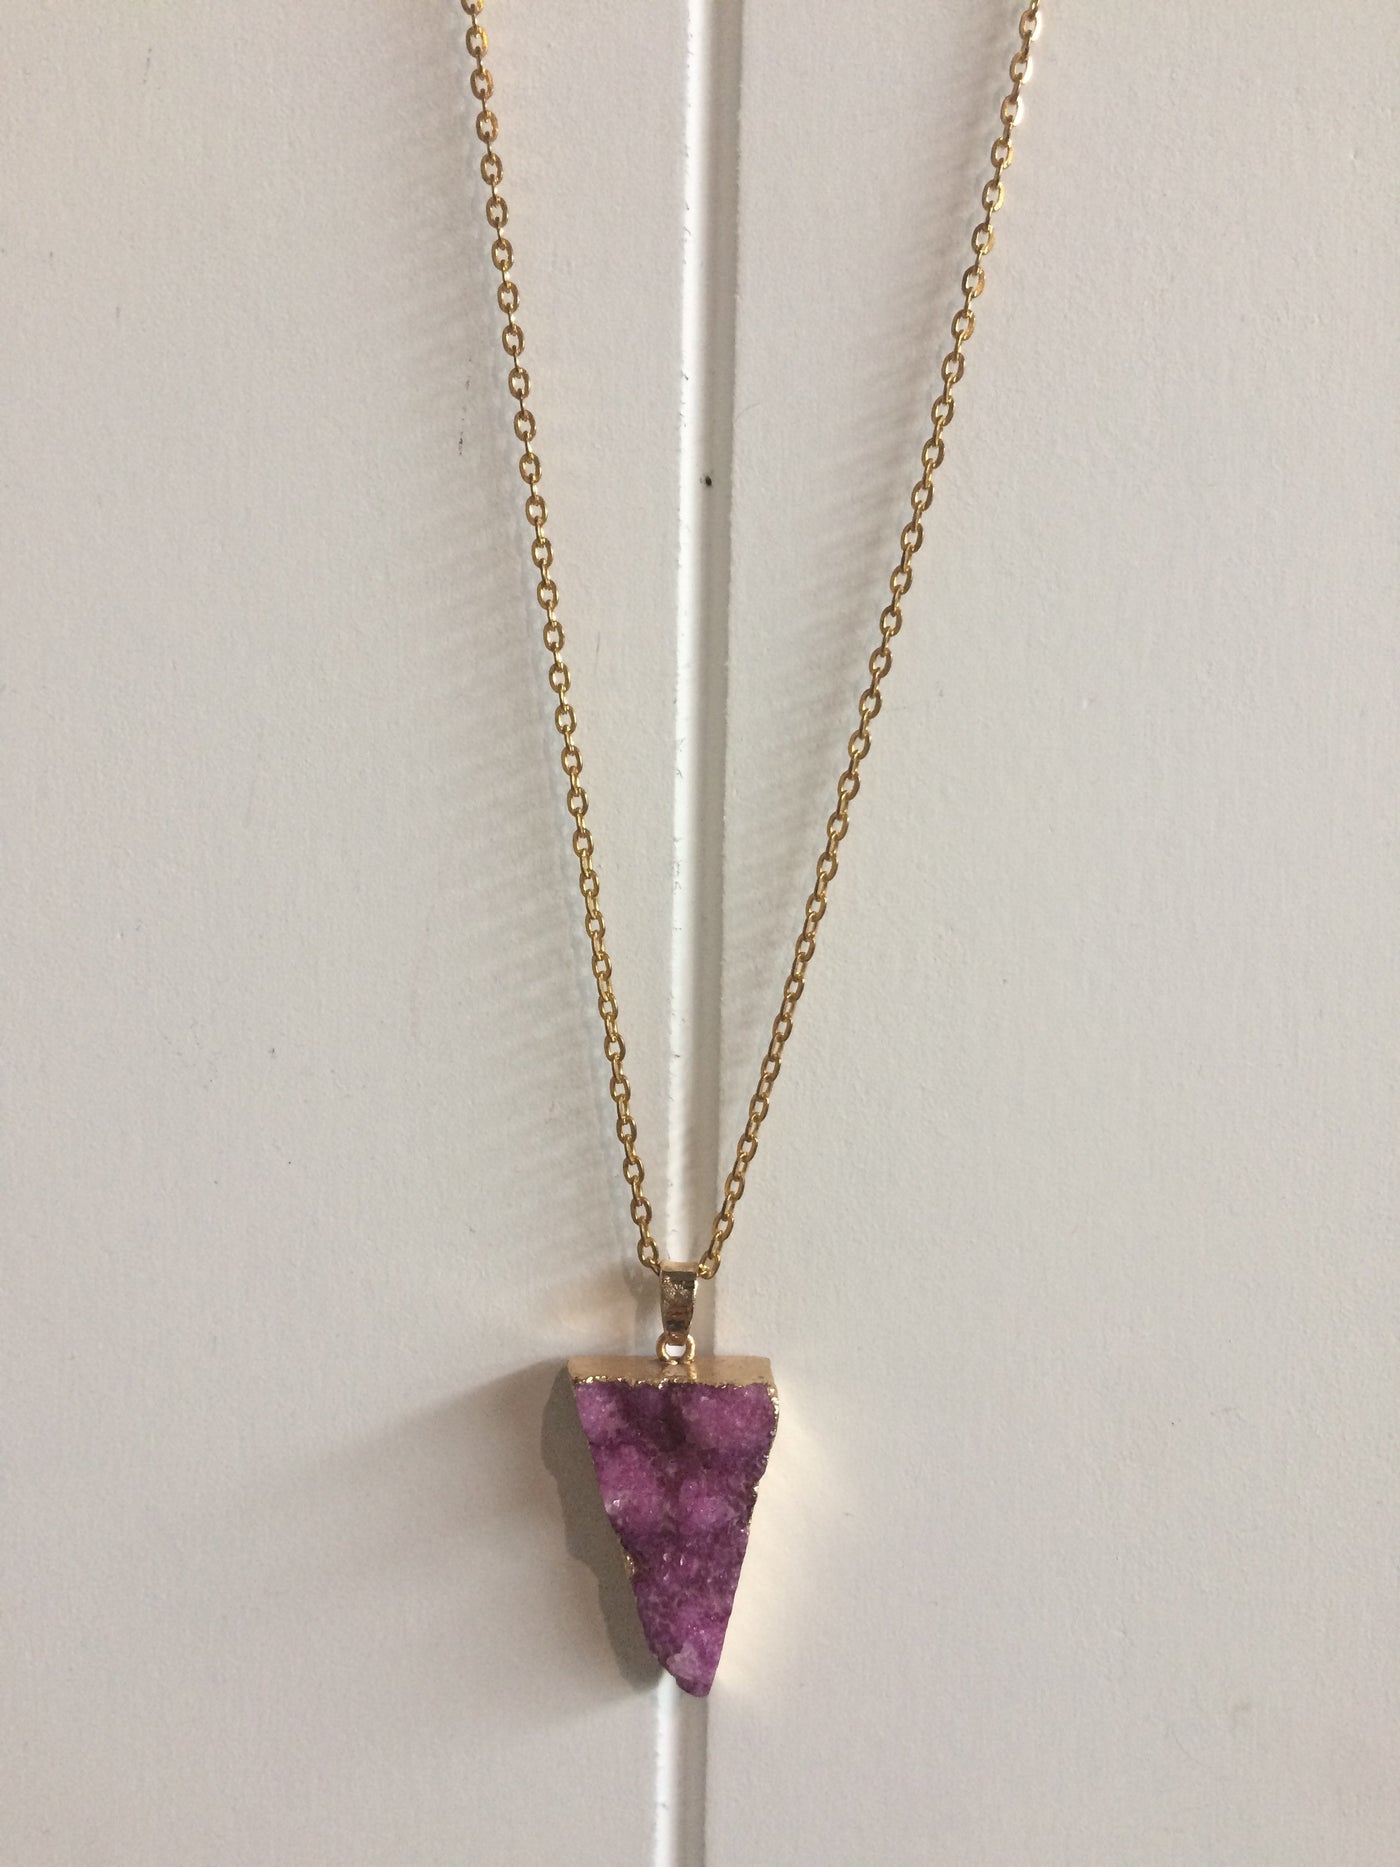 Necklace - Druzy Quartz Crystal Necklace